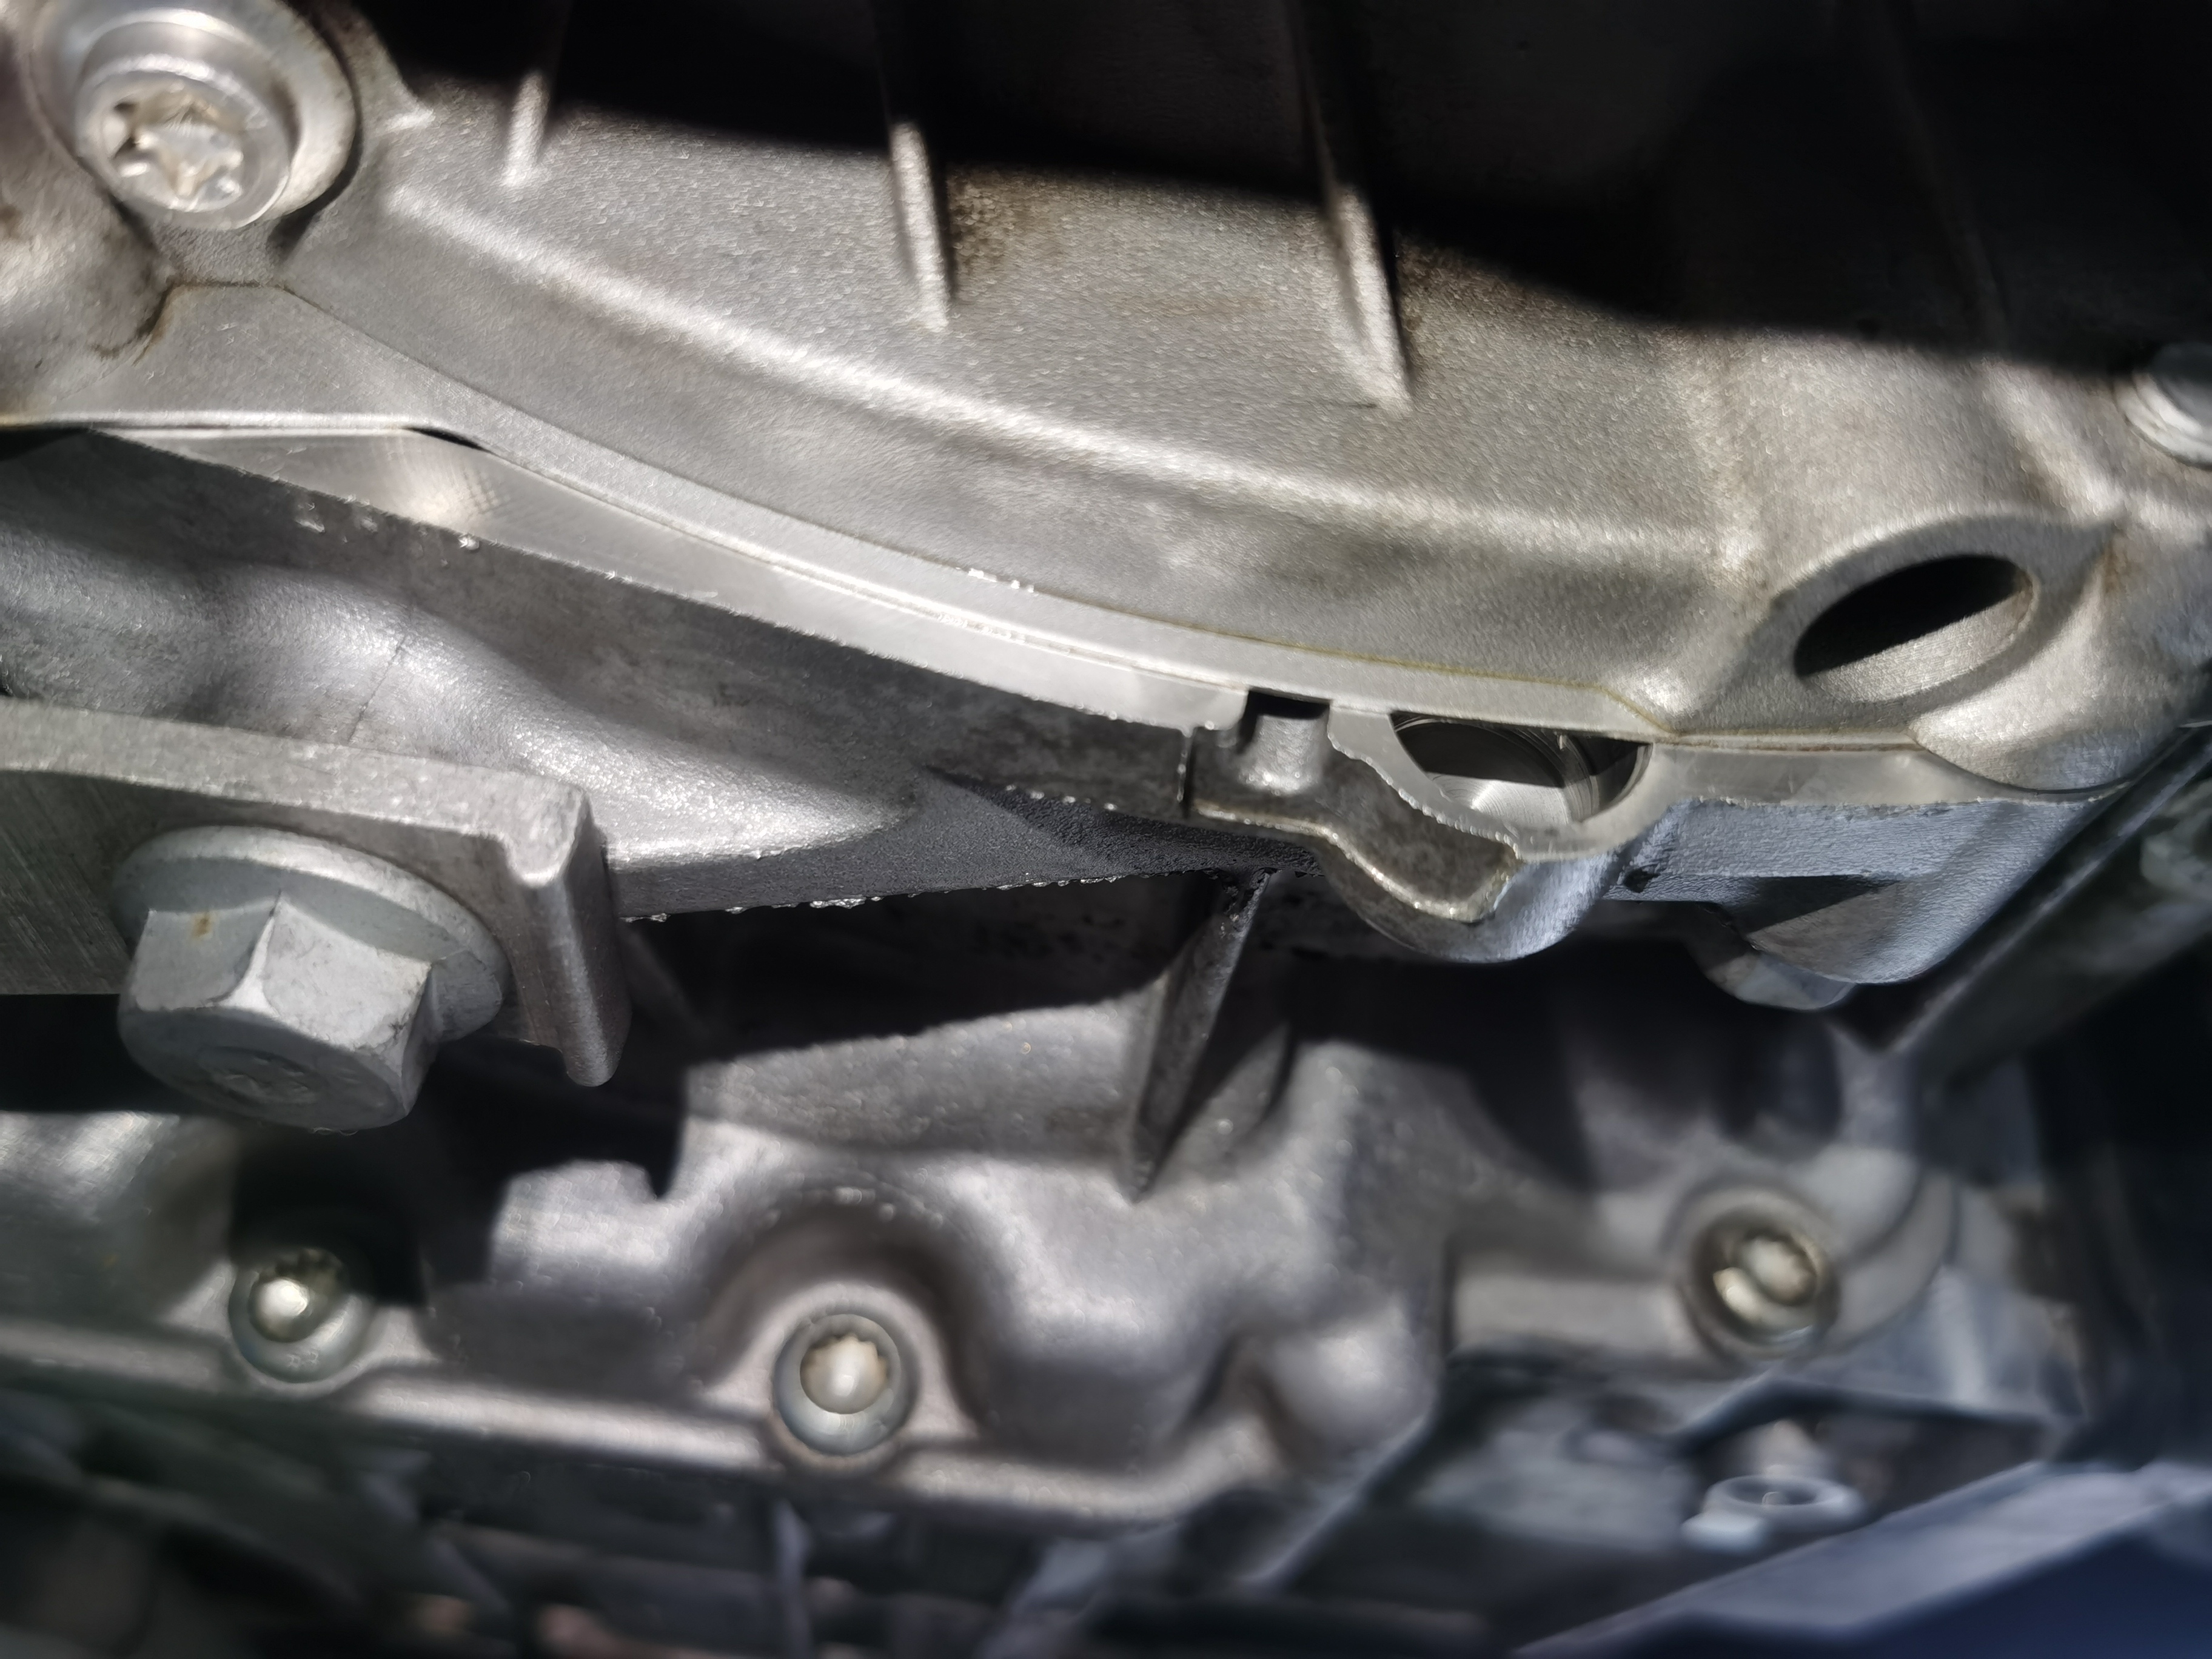 上汽大众帕萨特车辆变速箱漏油和加速时有异响，要求厂家按三包法政策给予更换变速箱总成维修